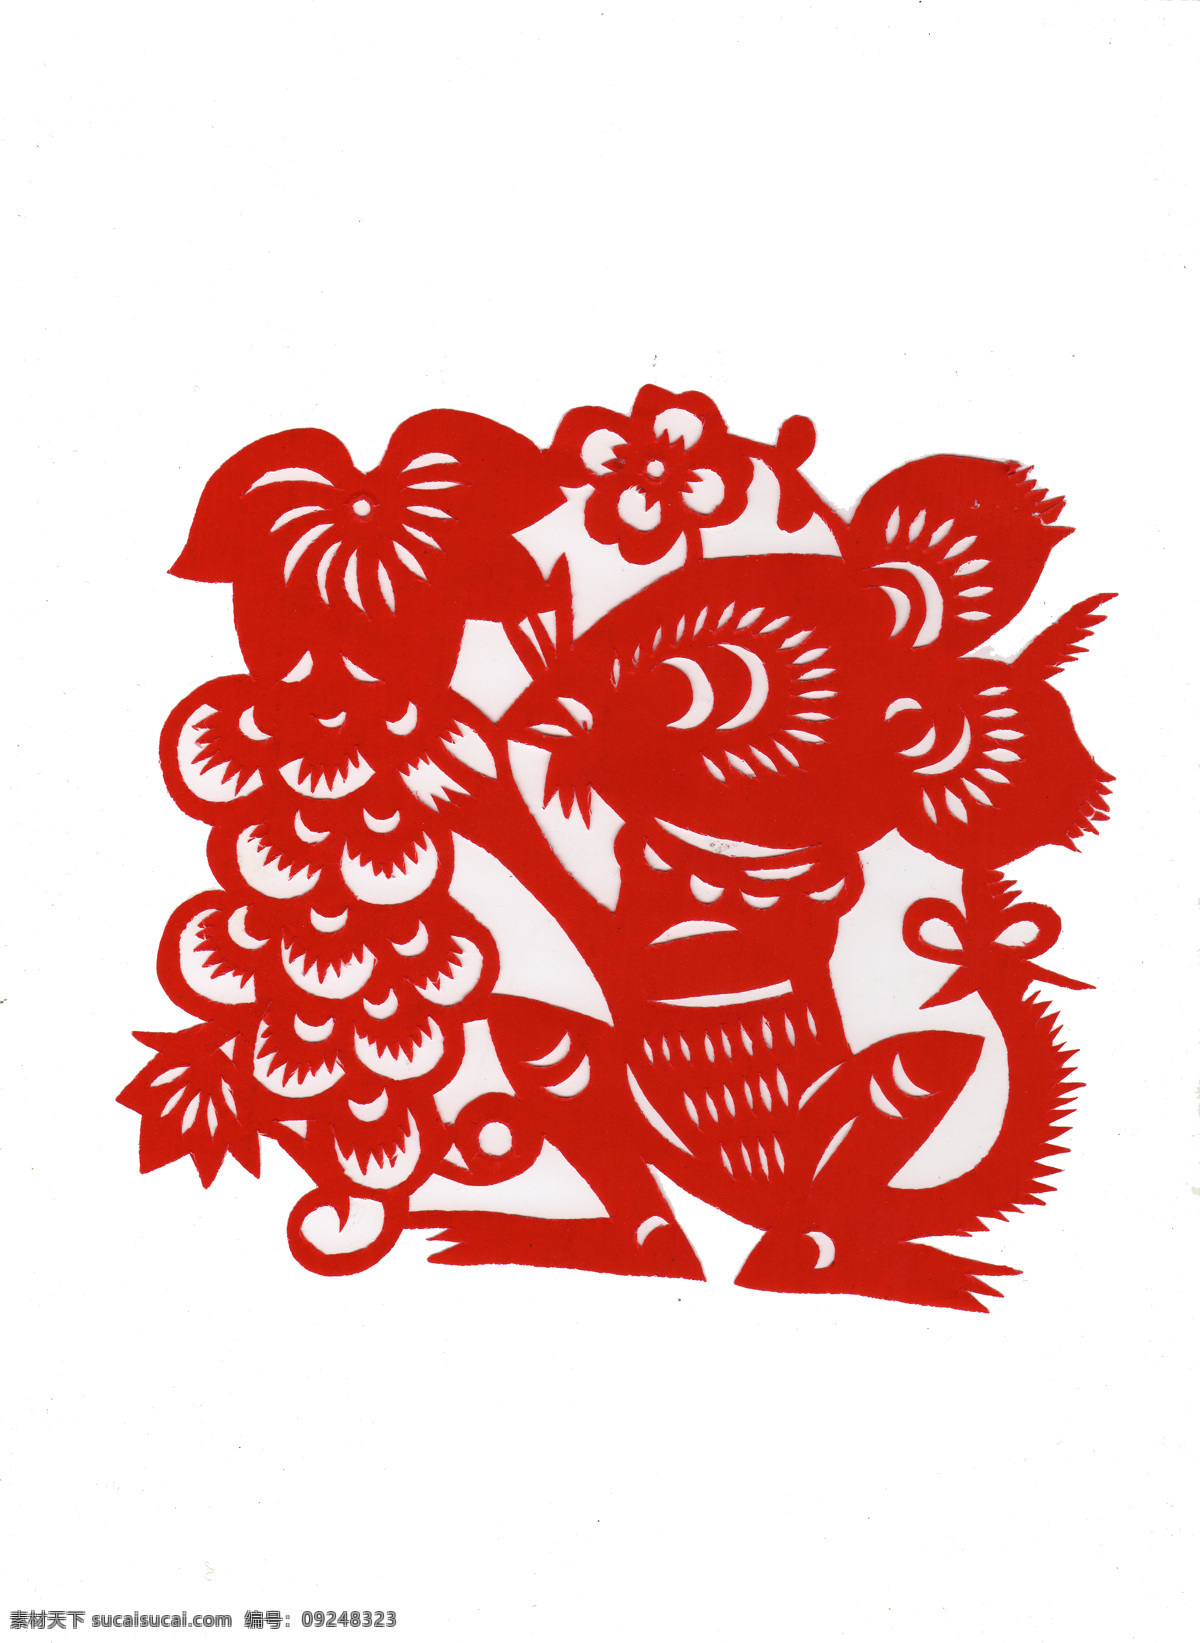 十二生肖剪纸 鼠 花纹装饰 剪纸表现形式 中国传统文化 剪纸 传统文化 文化艺术